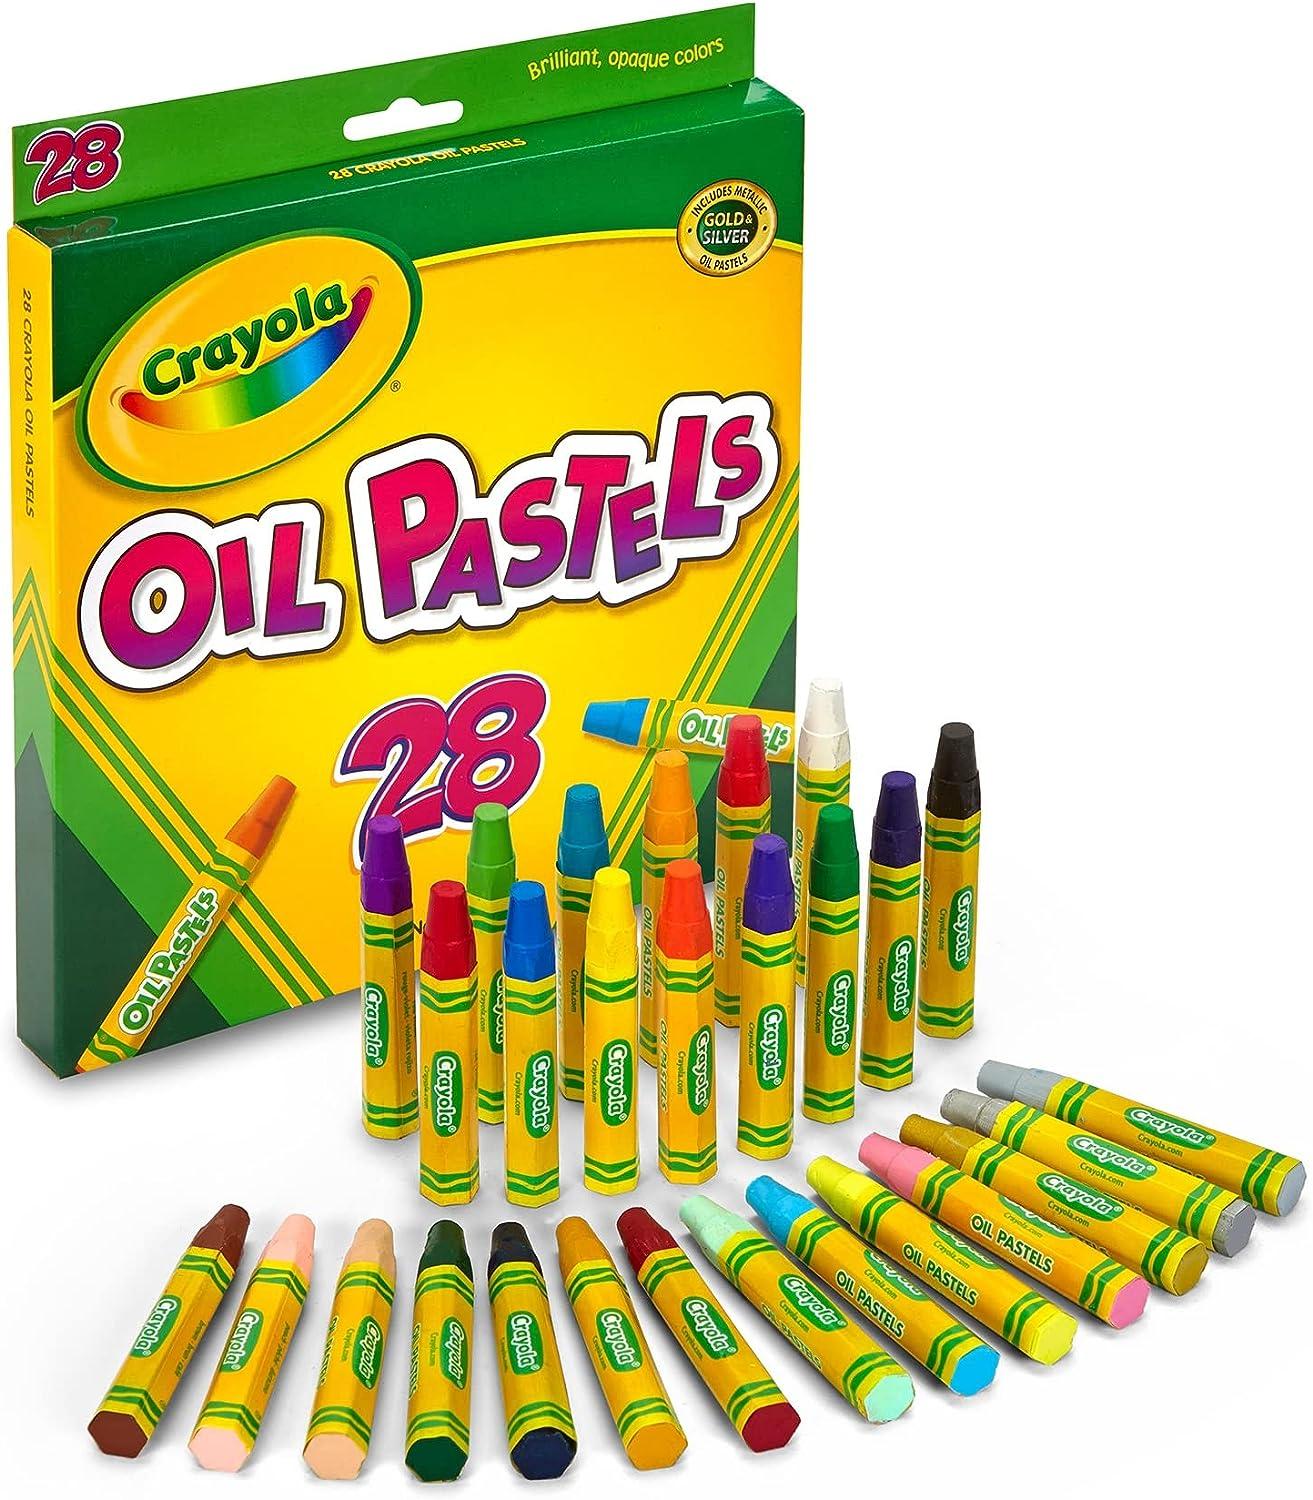 Crayola Other School Supplies